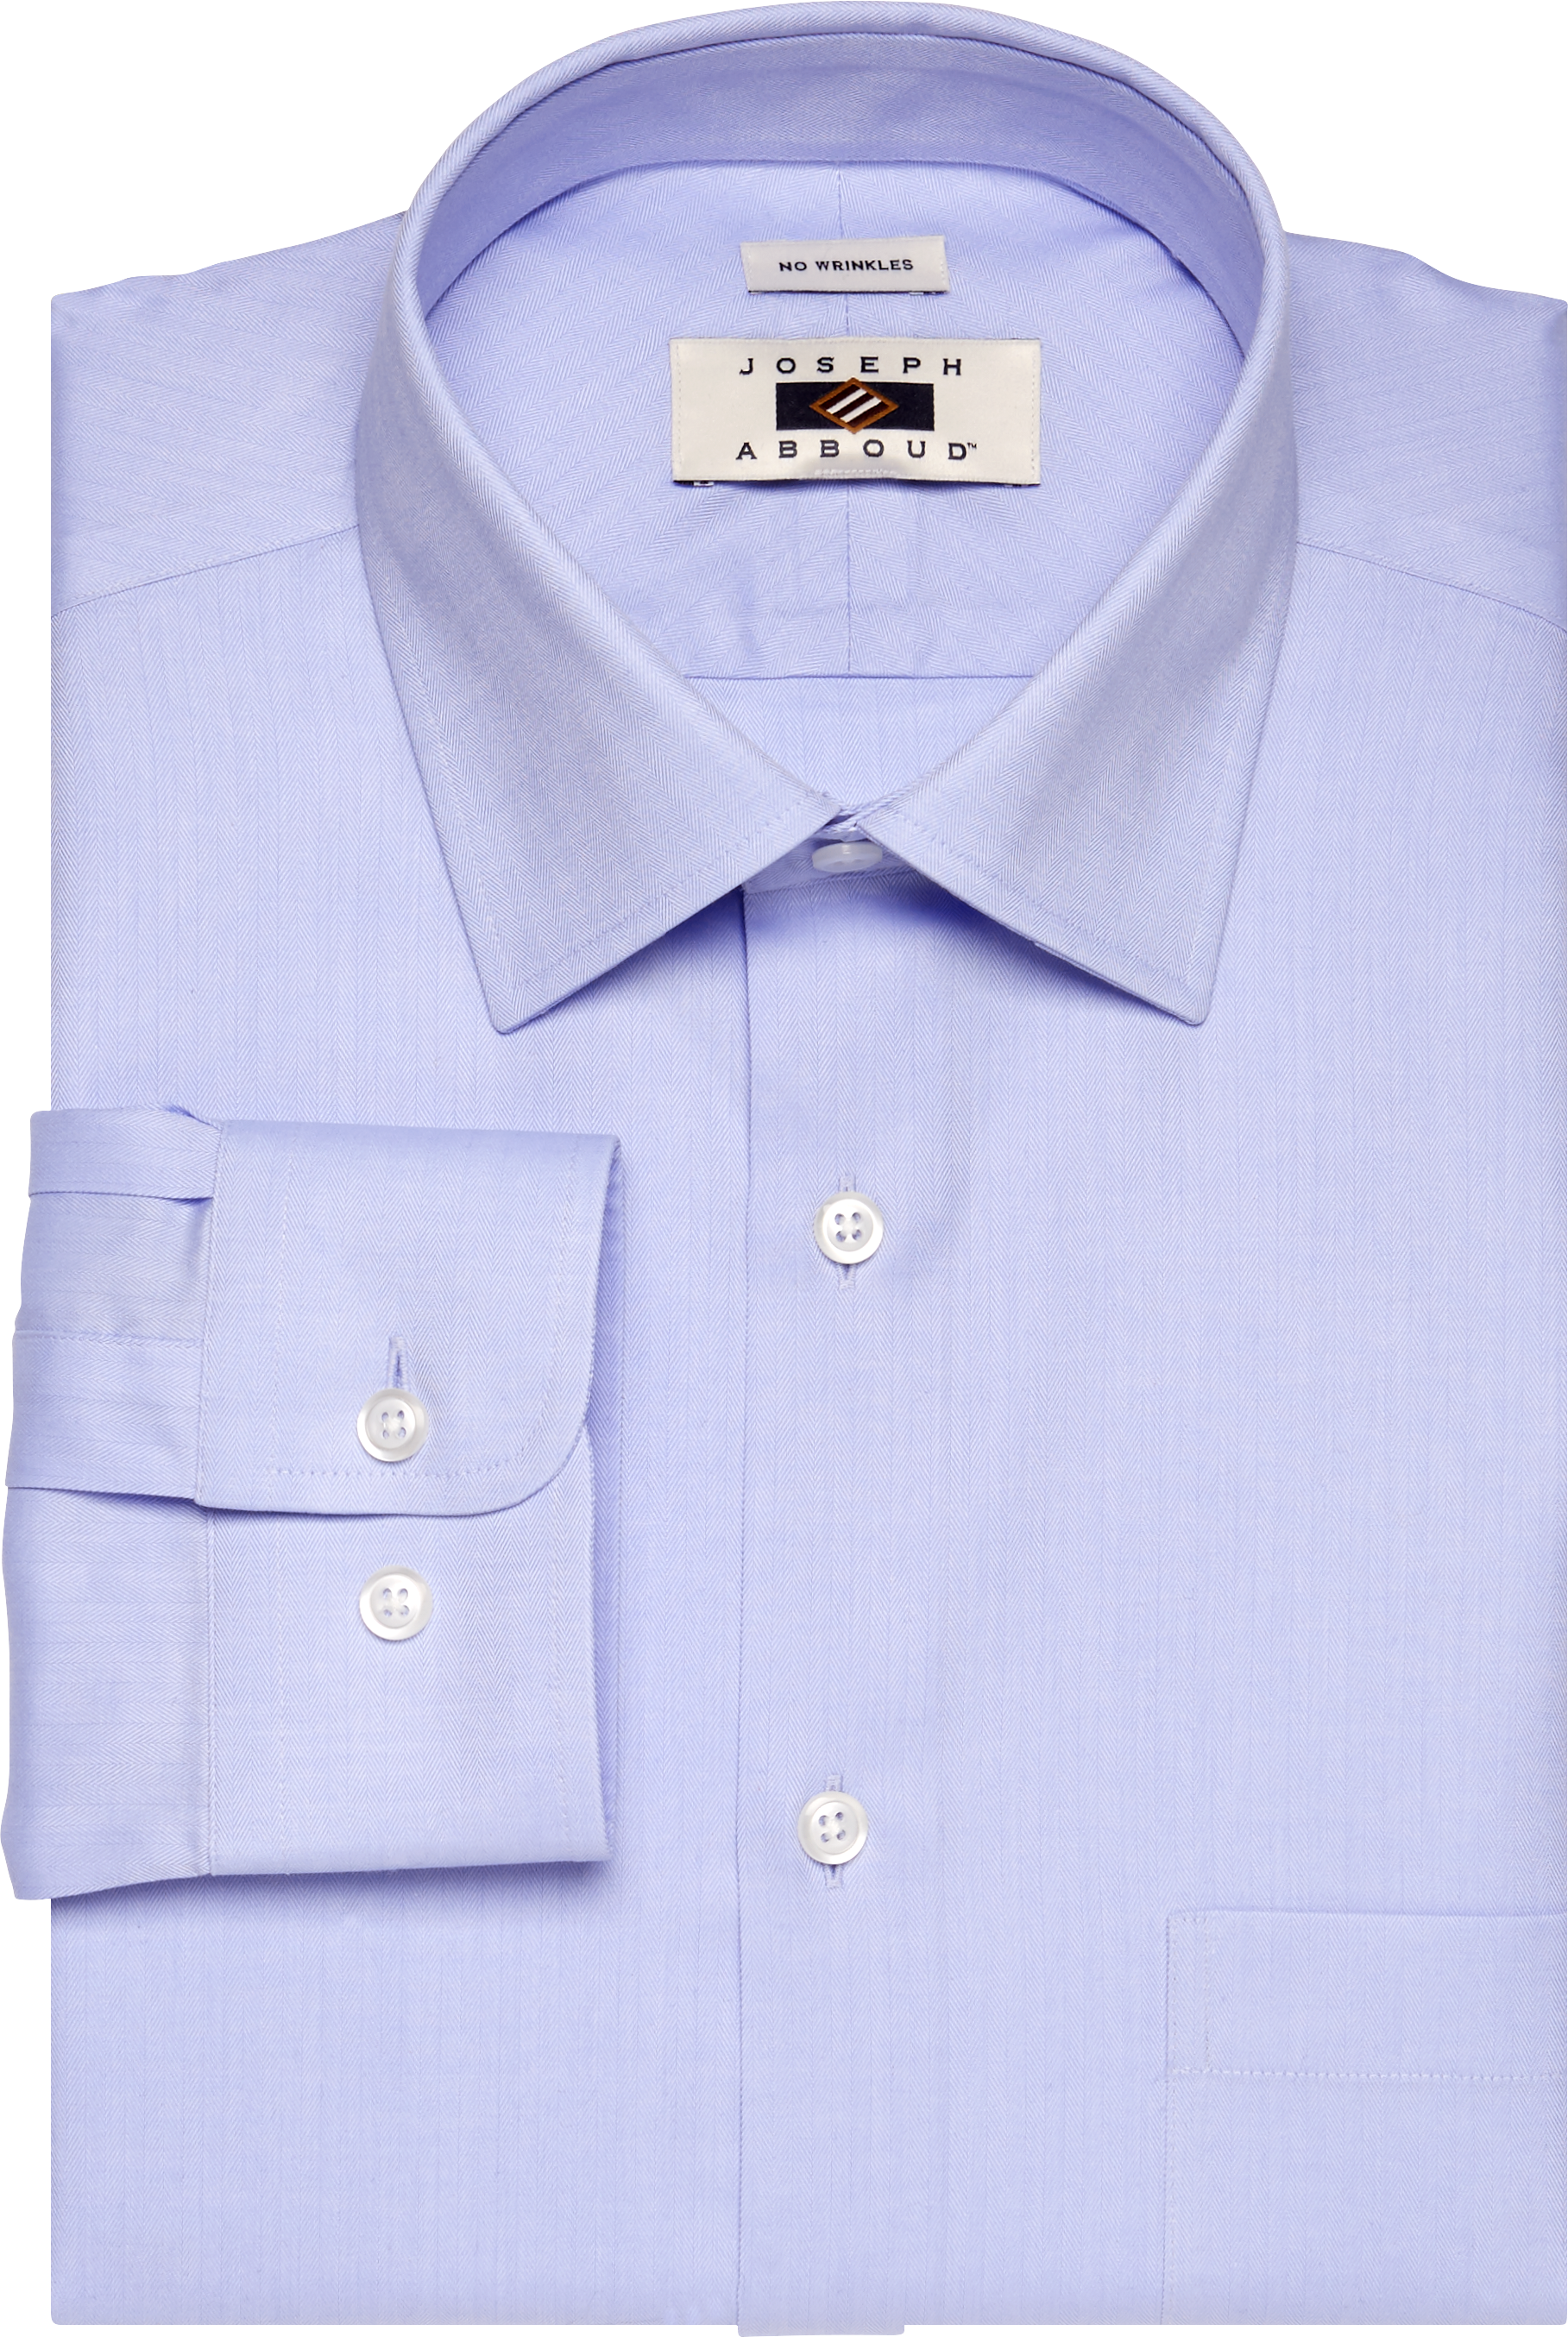 Joseph Abboud Blue Egyptian Cotton Dress Shirt - Men's Sale | Men's ...